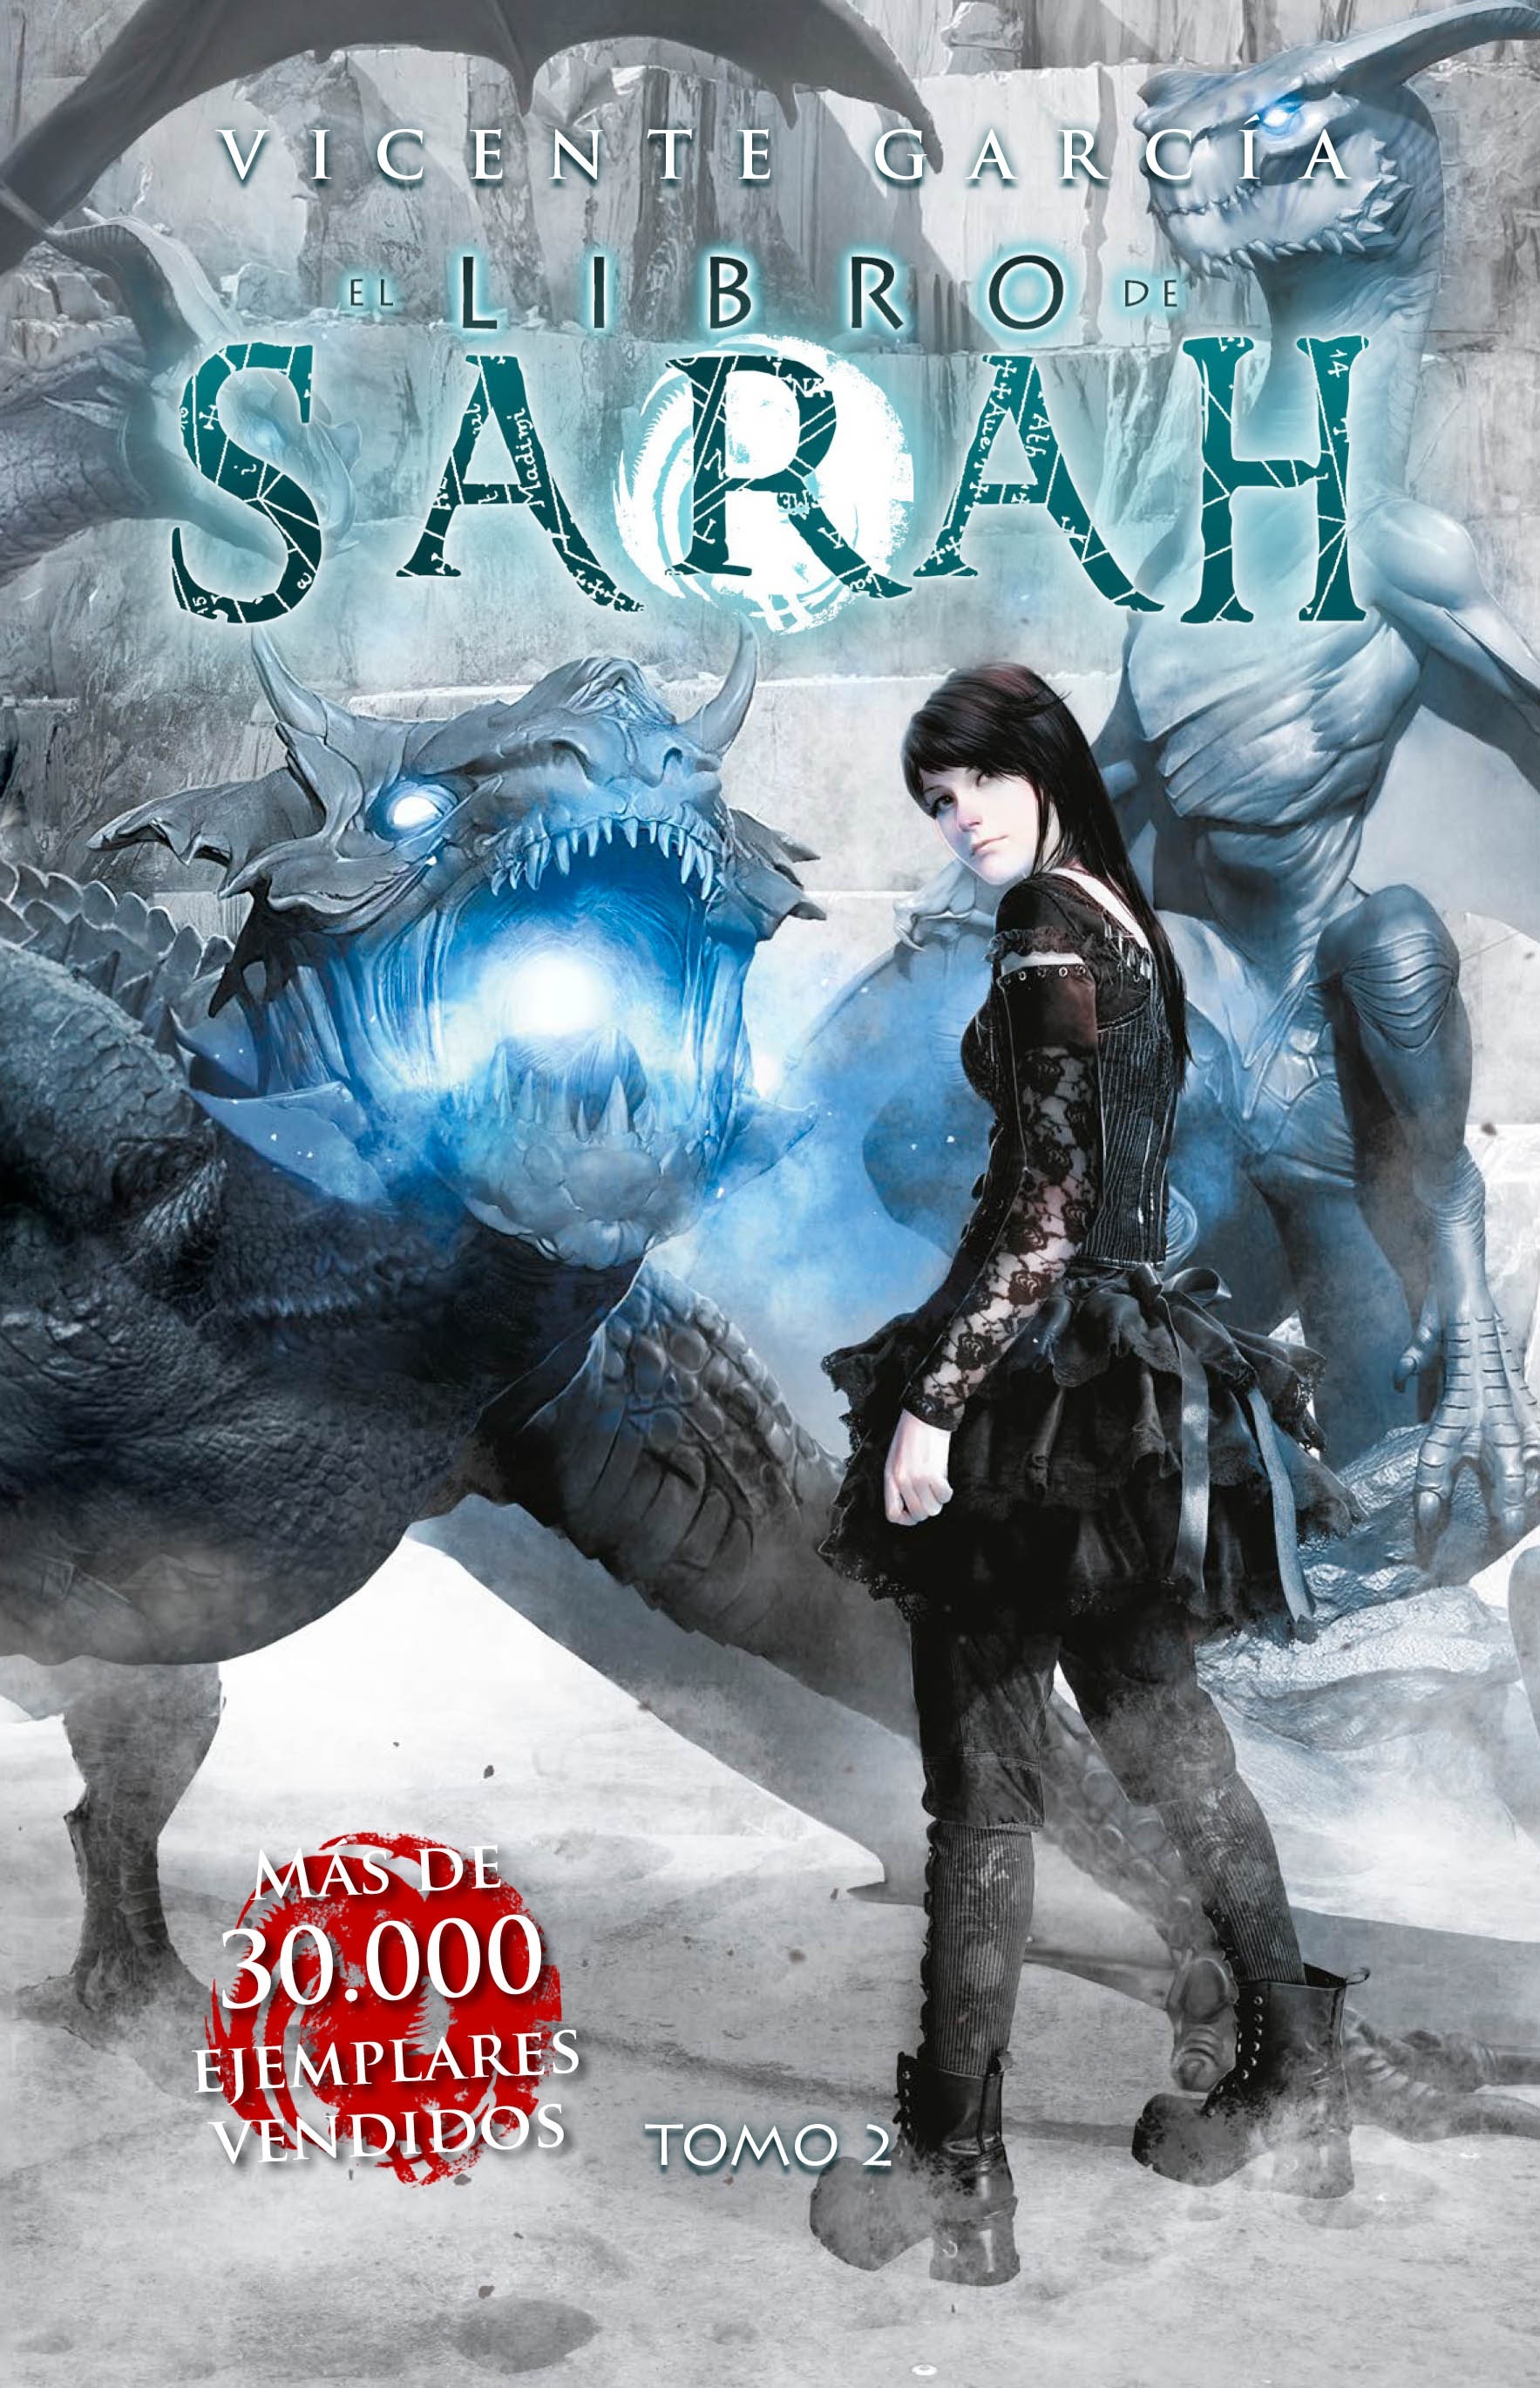 Libro de Sarah, El (tomo 2). 